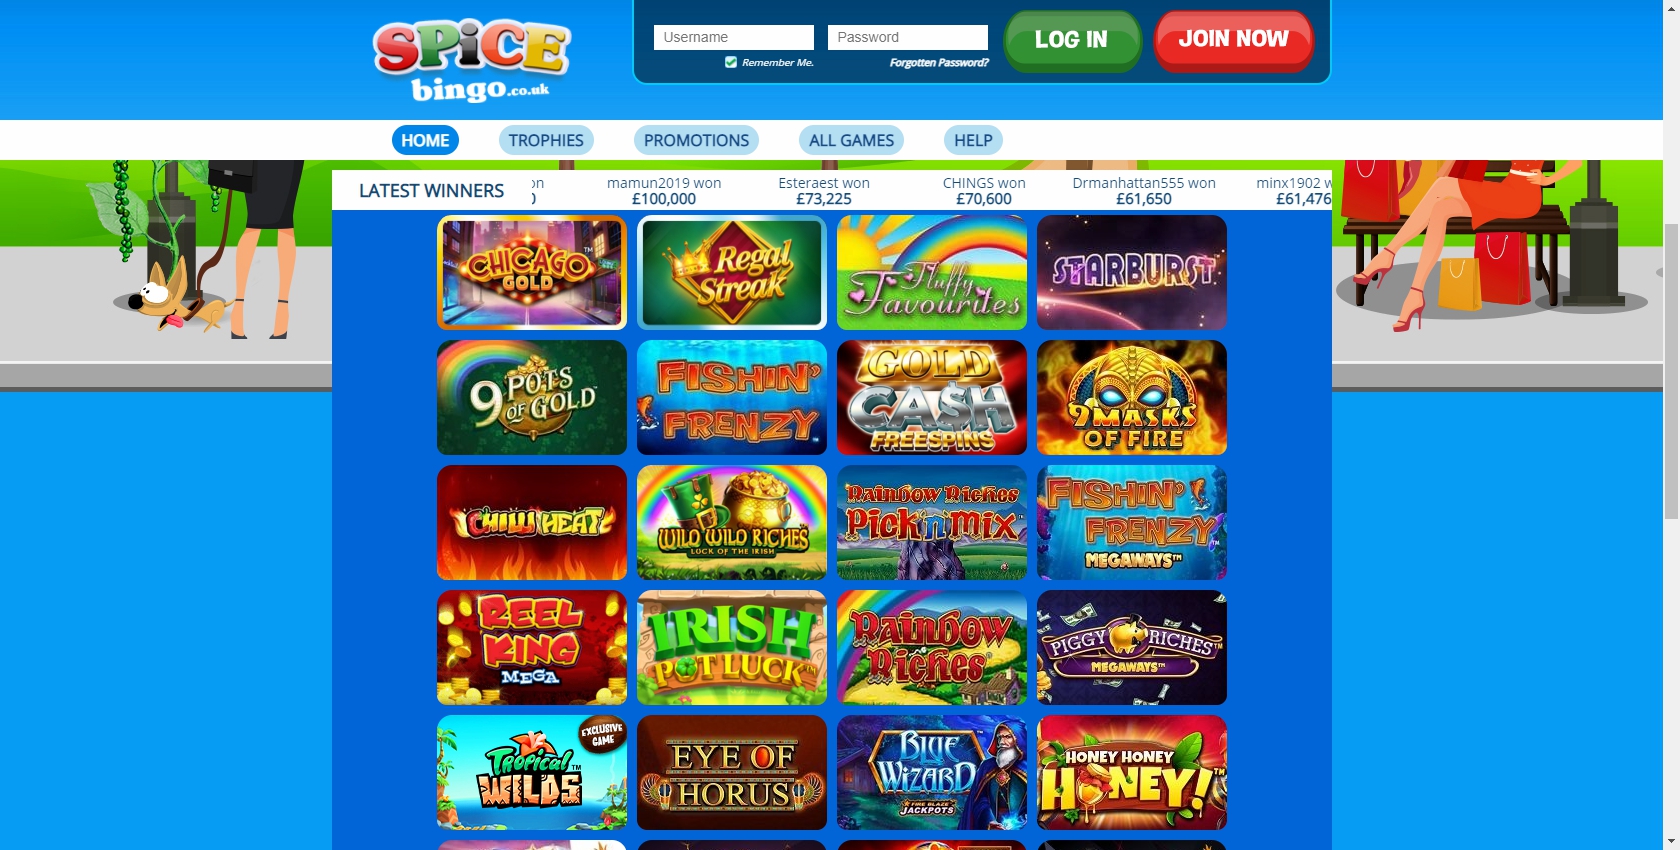 Spice Bingo Casino Games